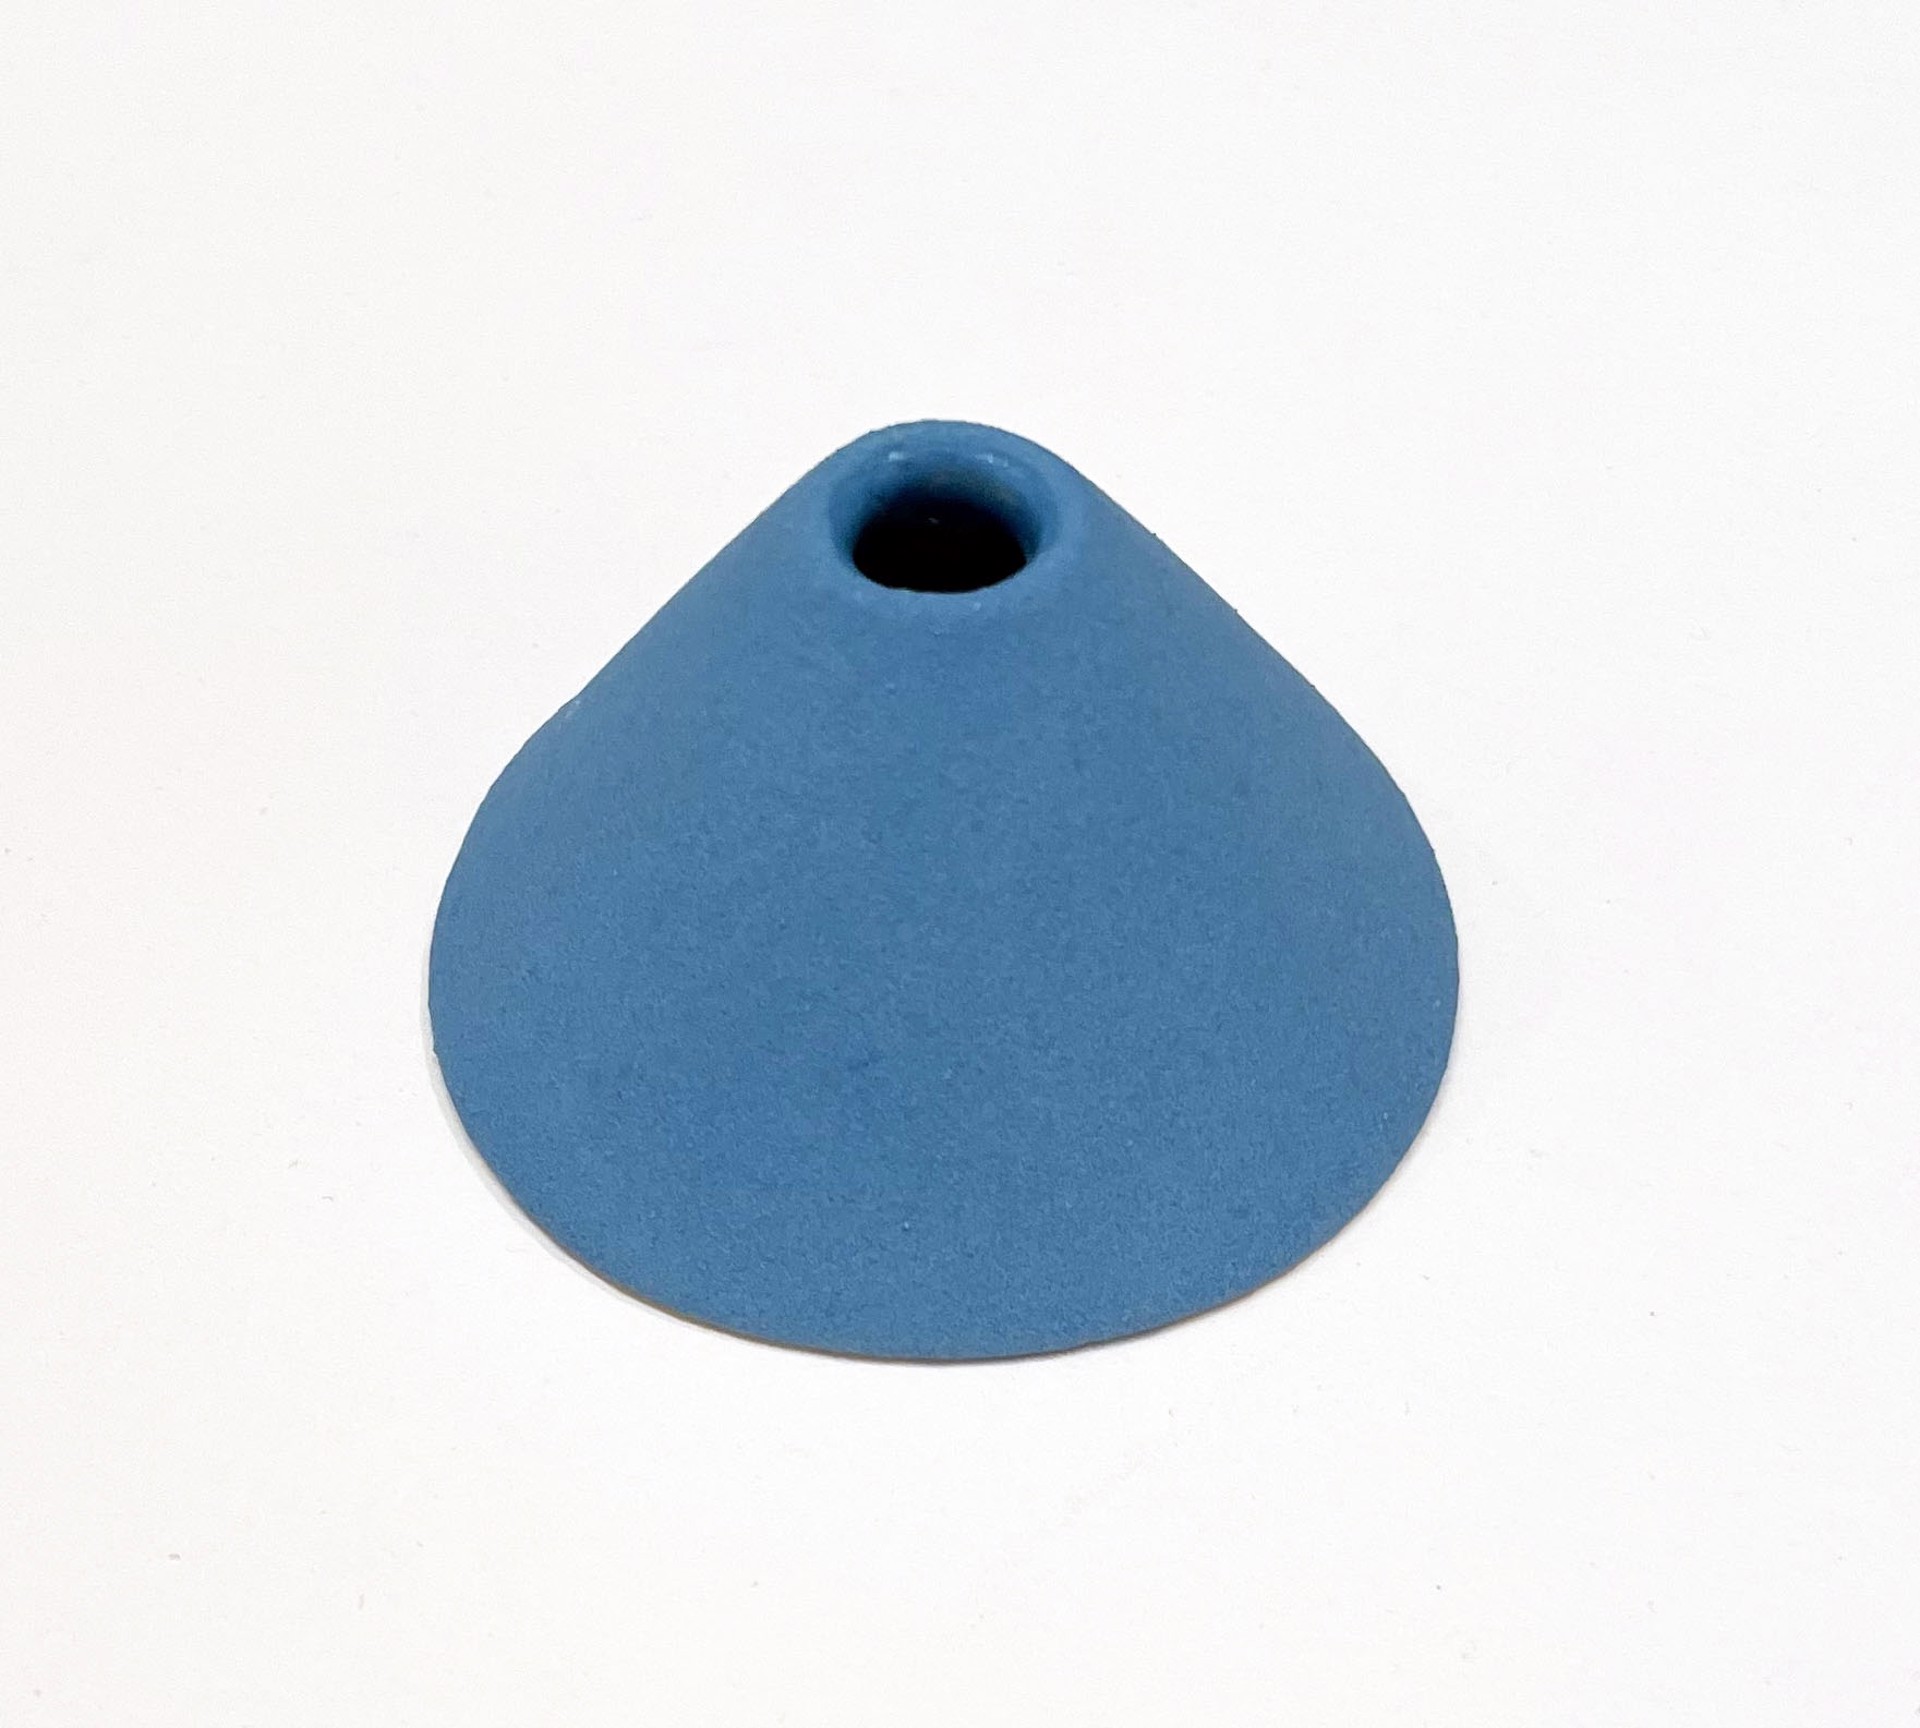 Small Blue Cone by Bean Finneran